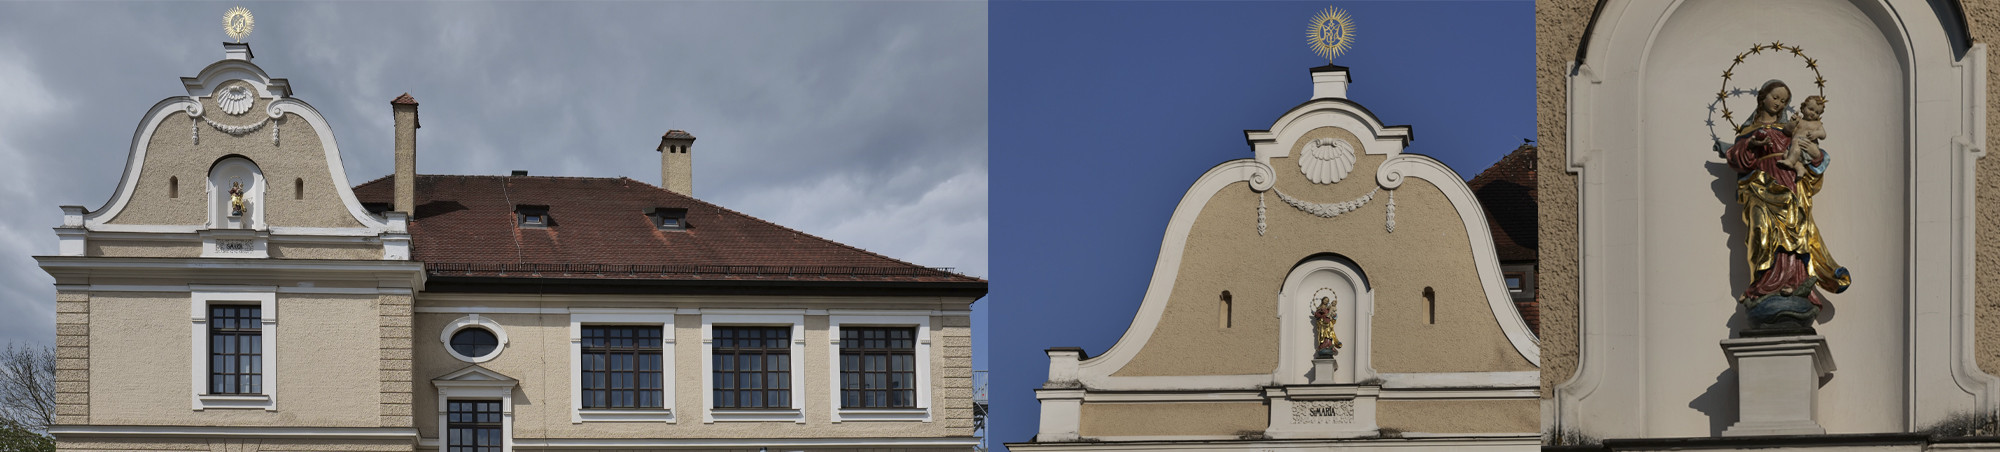 Außenansicht Ober- und Dachgeschoss, Schmuckgiebel und Marienfigur